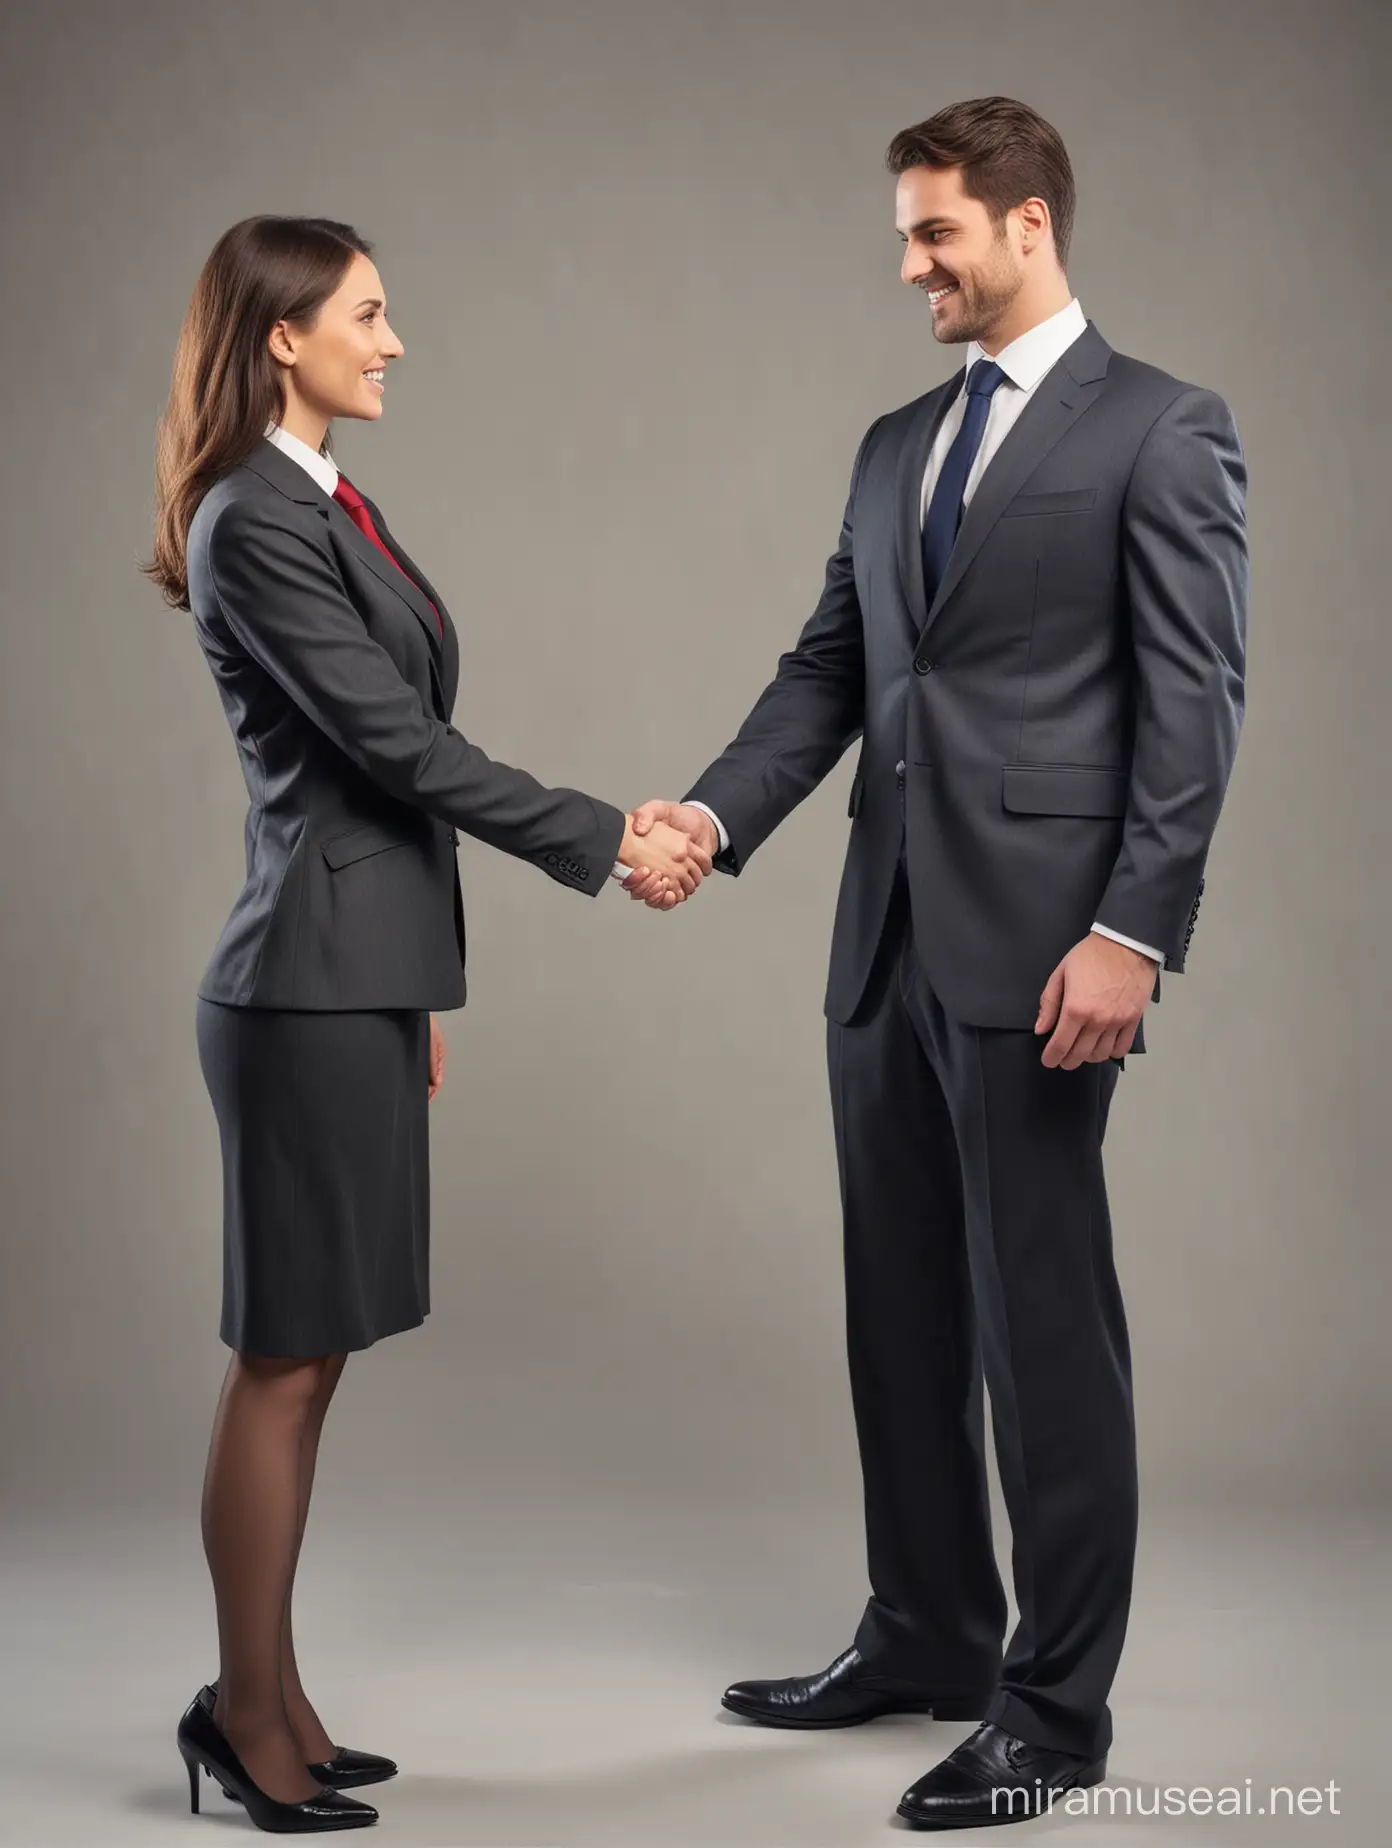 immagine di un uomo e una donna vestiti con giacca e cravatta l'uomo ed in tailleur la donna che si stringono la mano